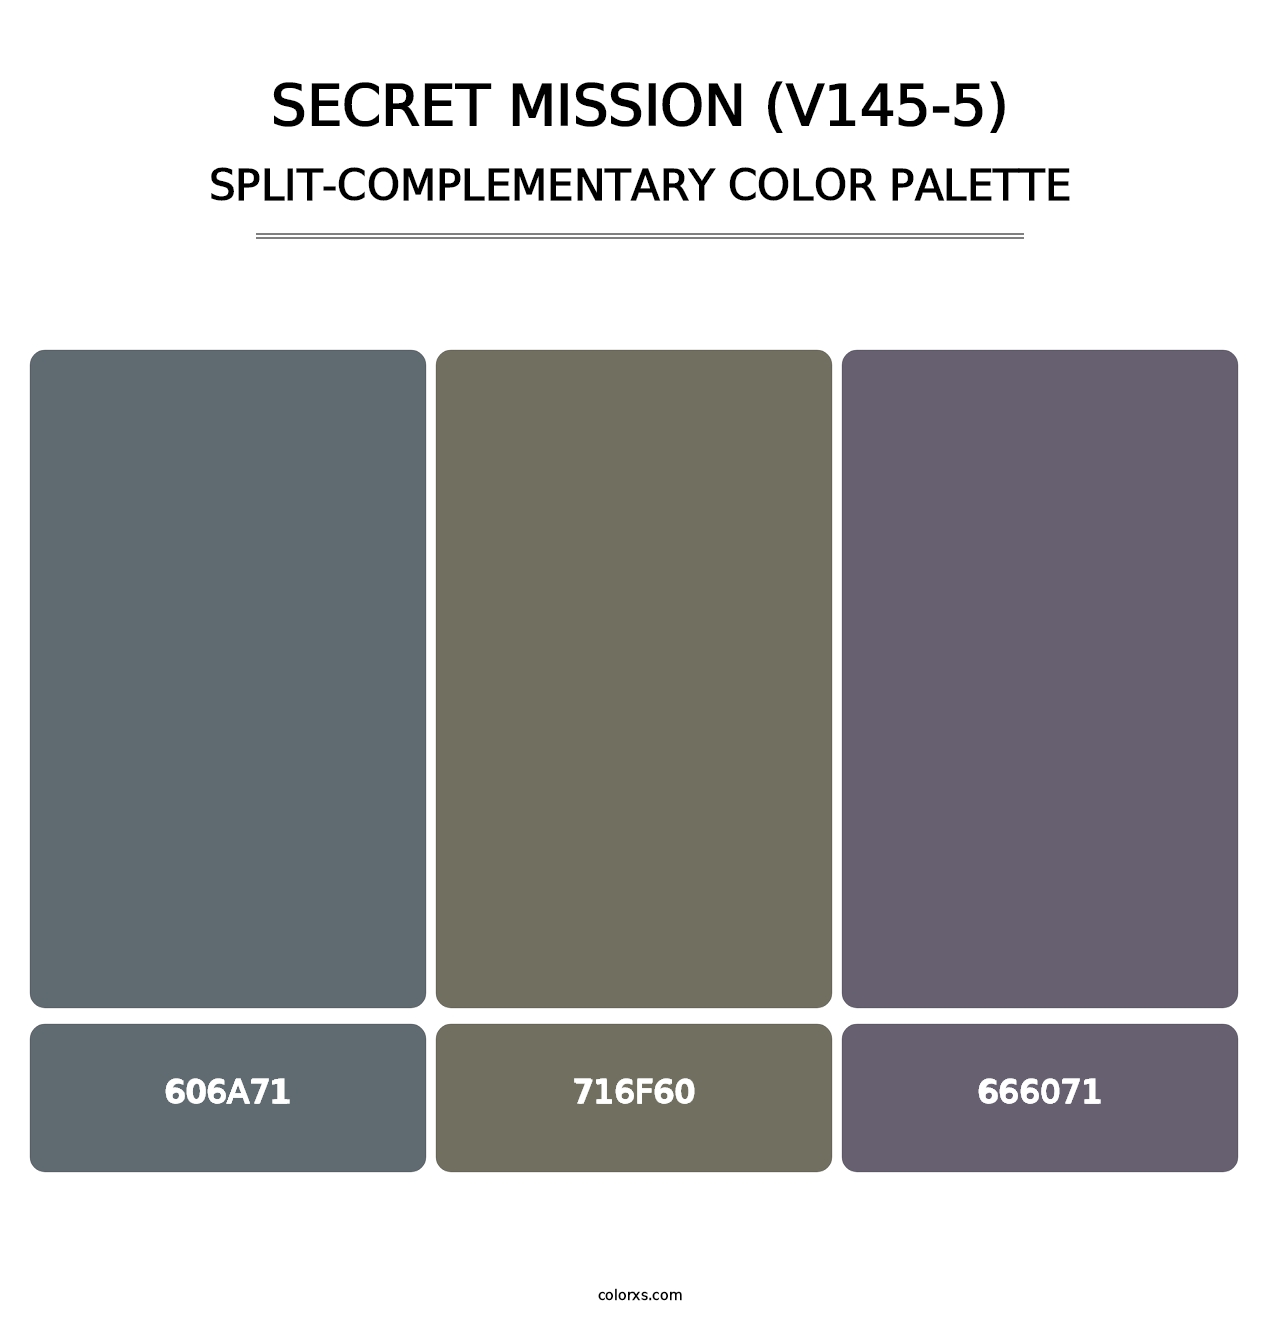 Secret Mission (V145-5) - Split-Complementary Color Palette